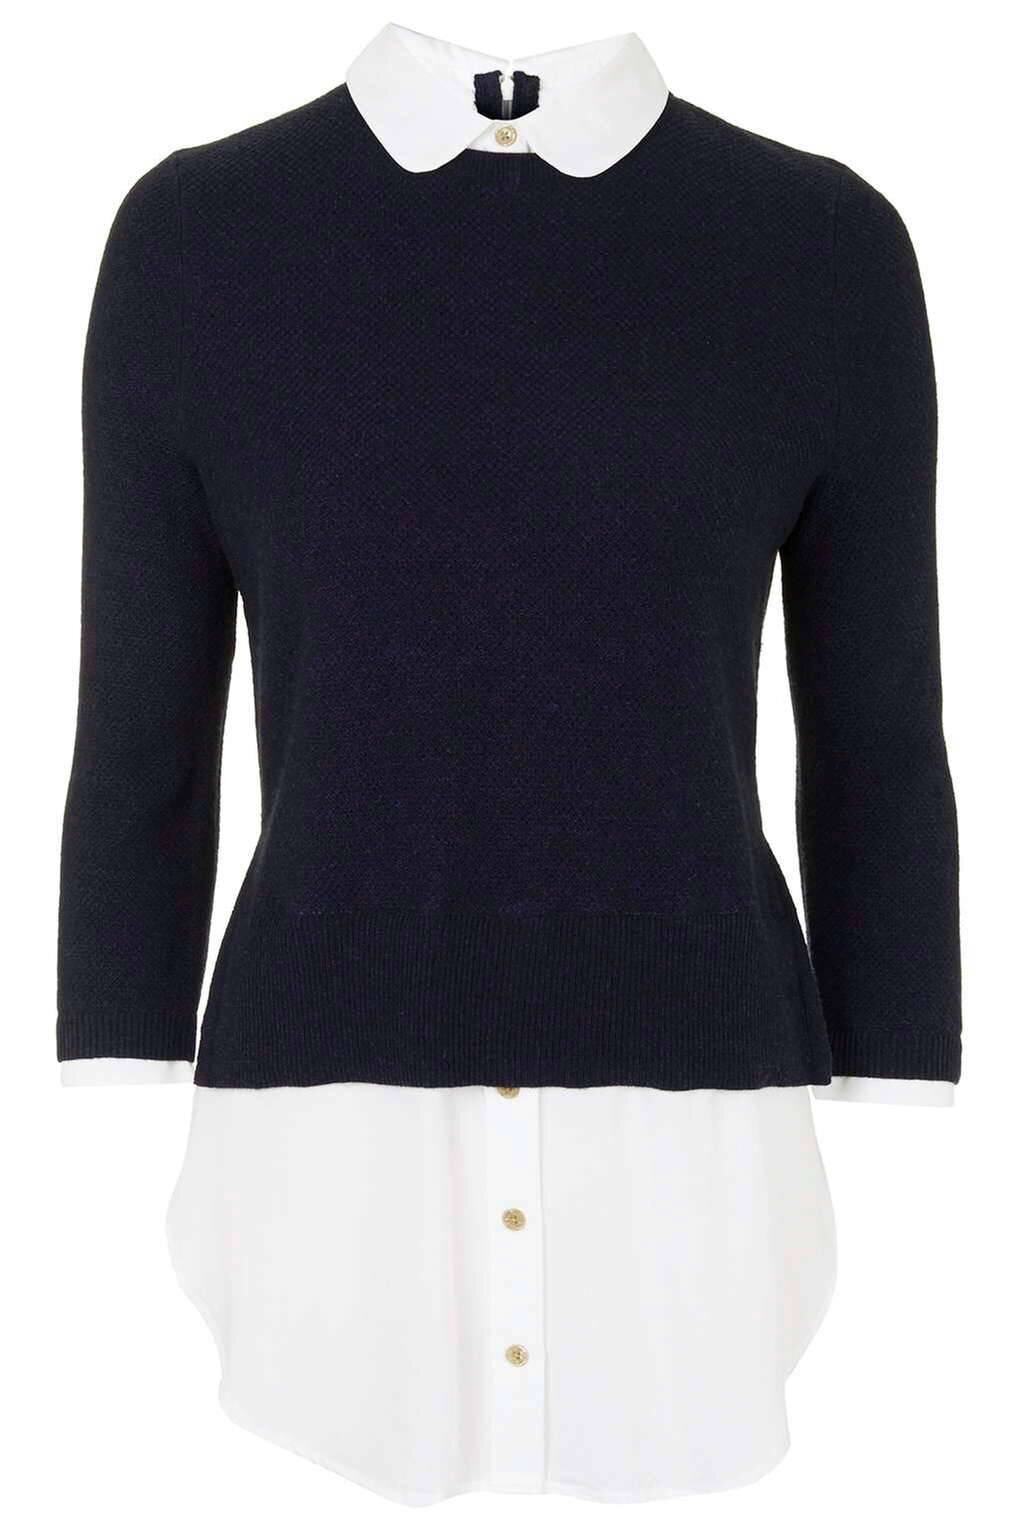 Topshop Round Collar Hybrid Sweater in Blue.jpg